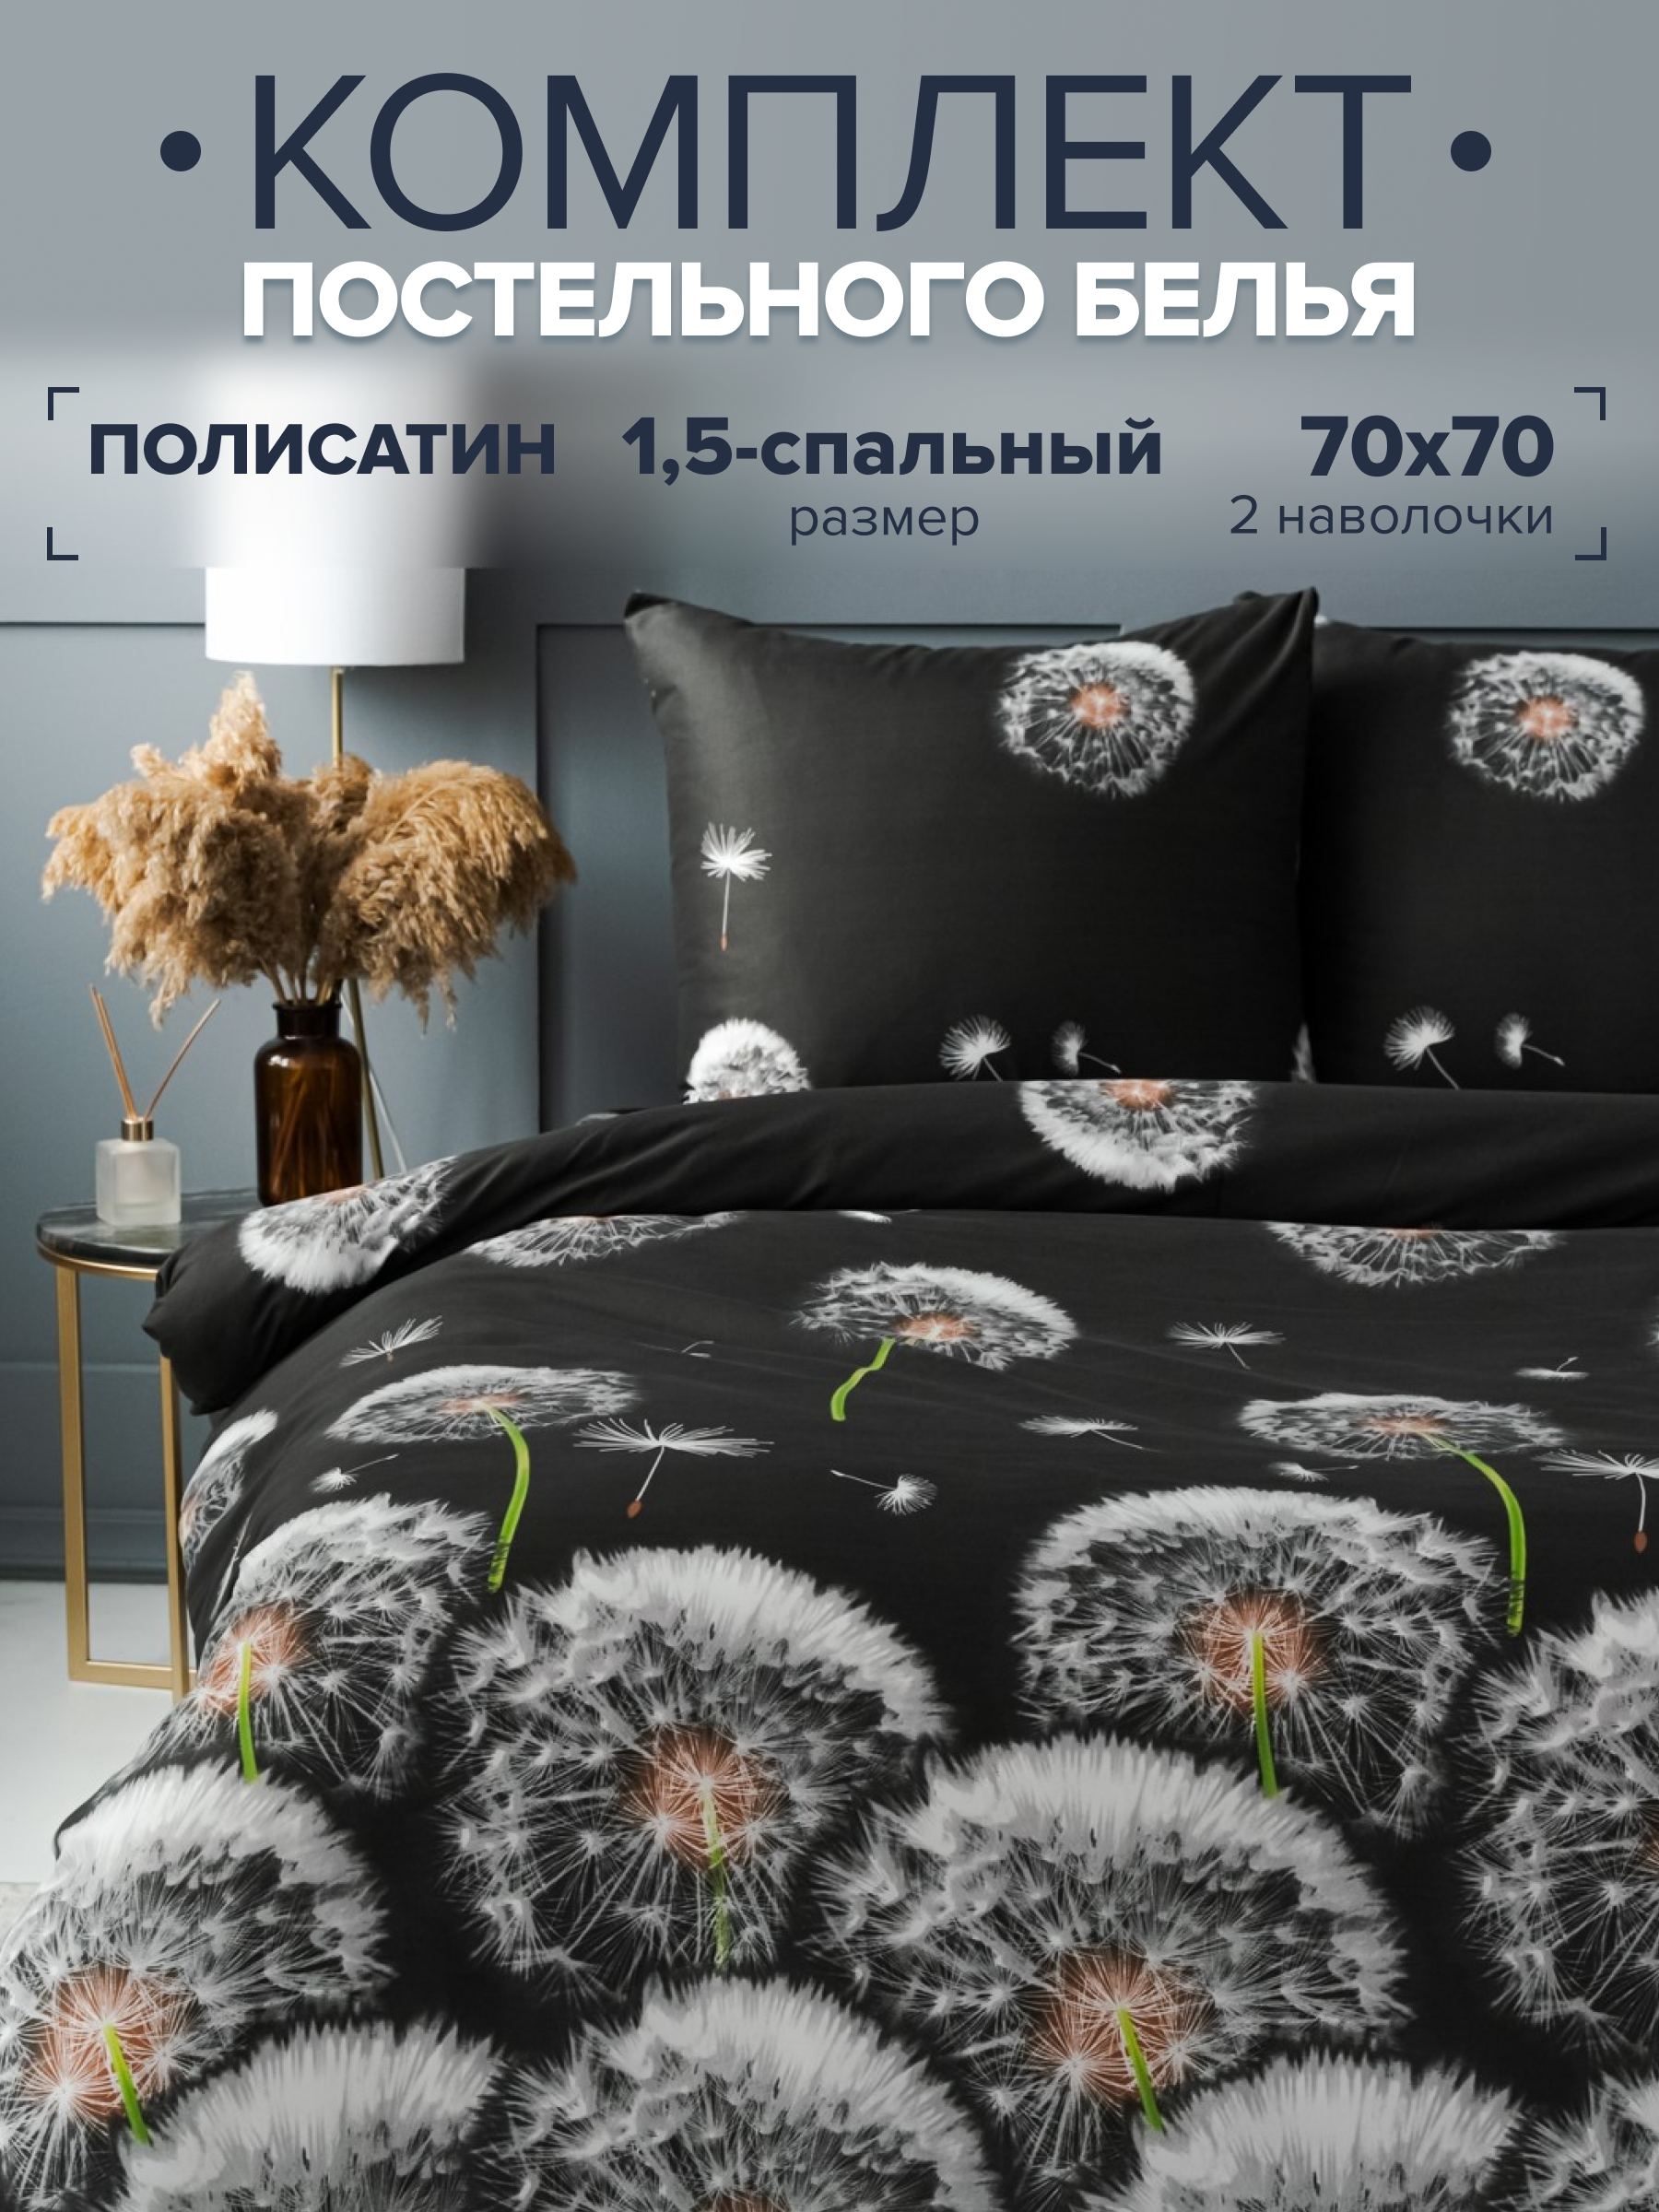 Комплект постельного белья Павлина 12238-05 1,5 спальный, полисатин, наволочки 70x70